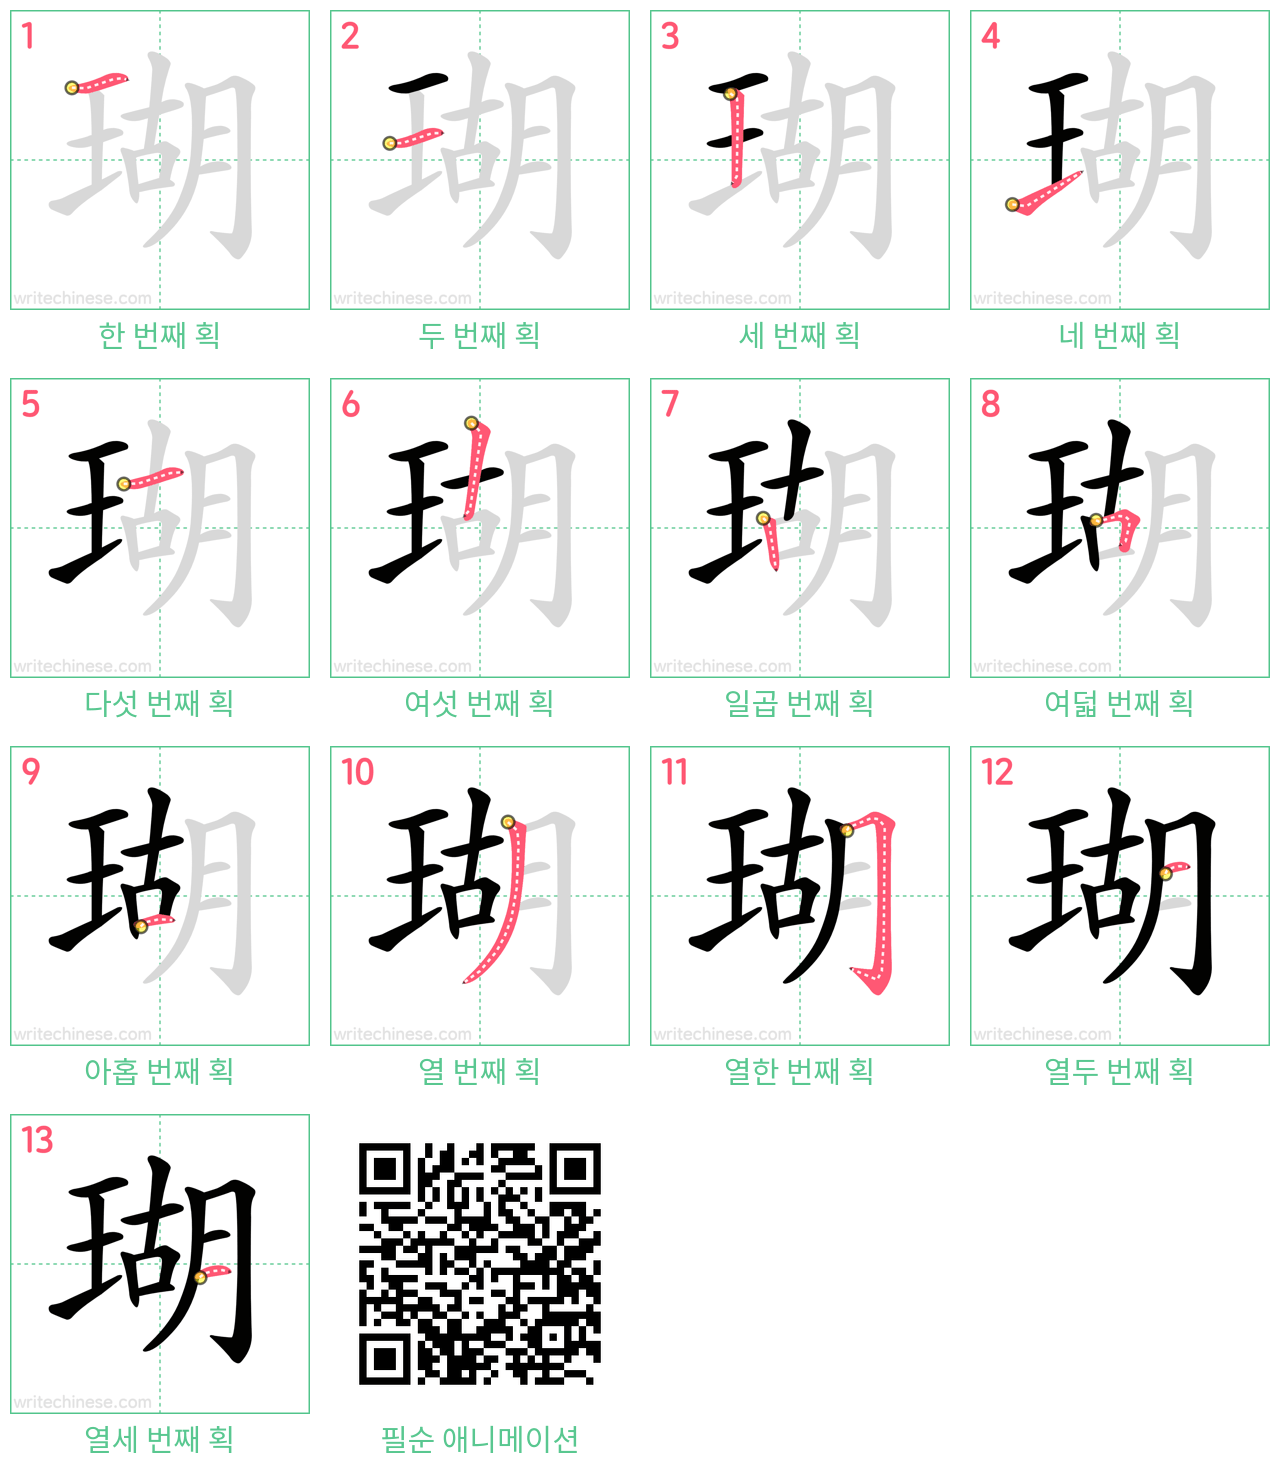 瑚 step-by-step stroke order diagrams